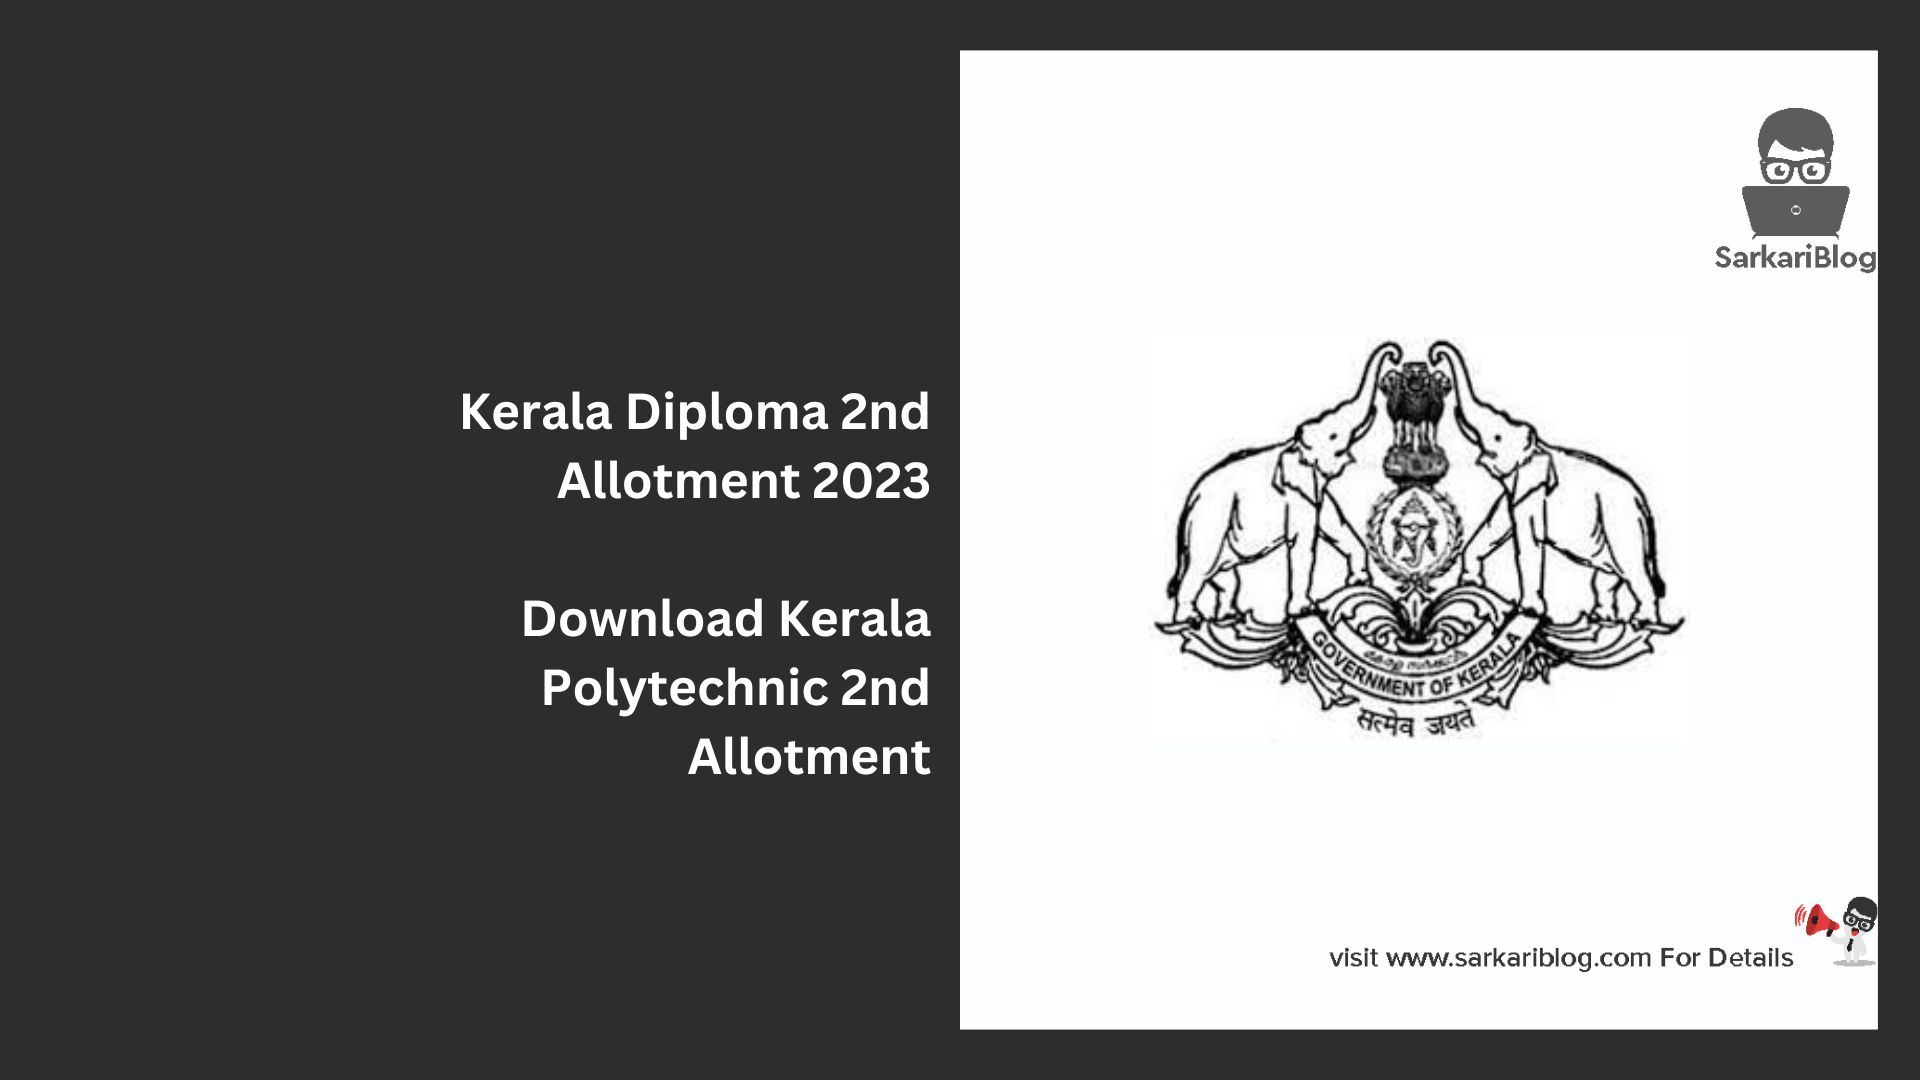 Kerala Diploma 2nd Allotment 2023